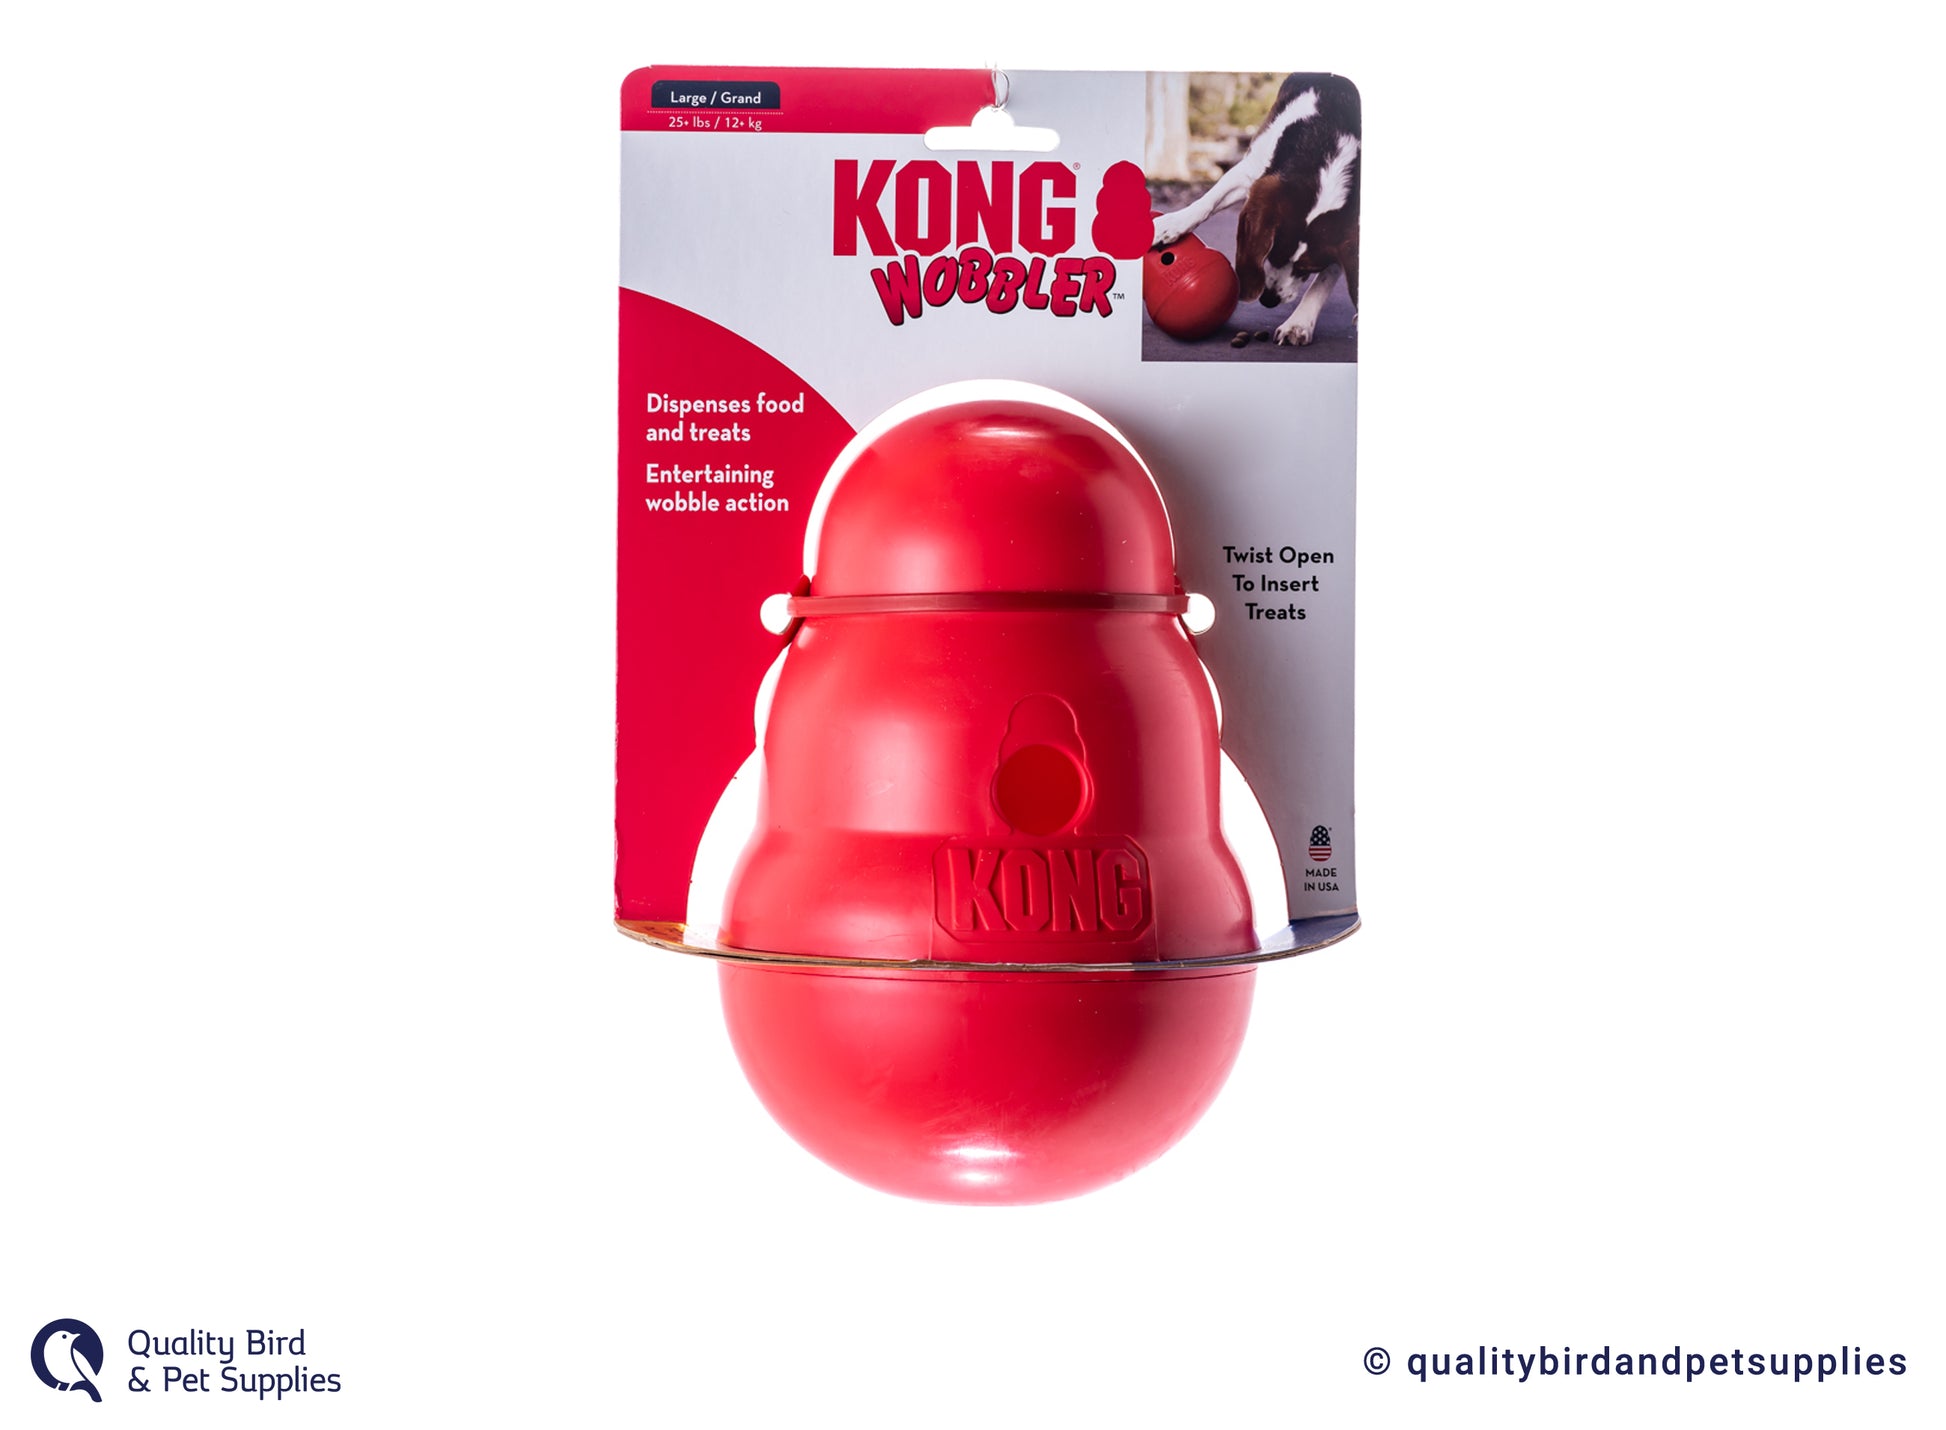 Kong Wobbler – Quality Bird & Pet Supplies